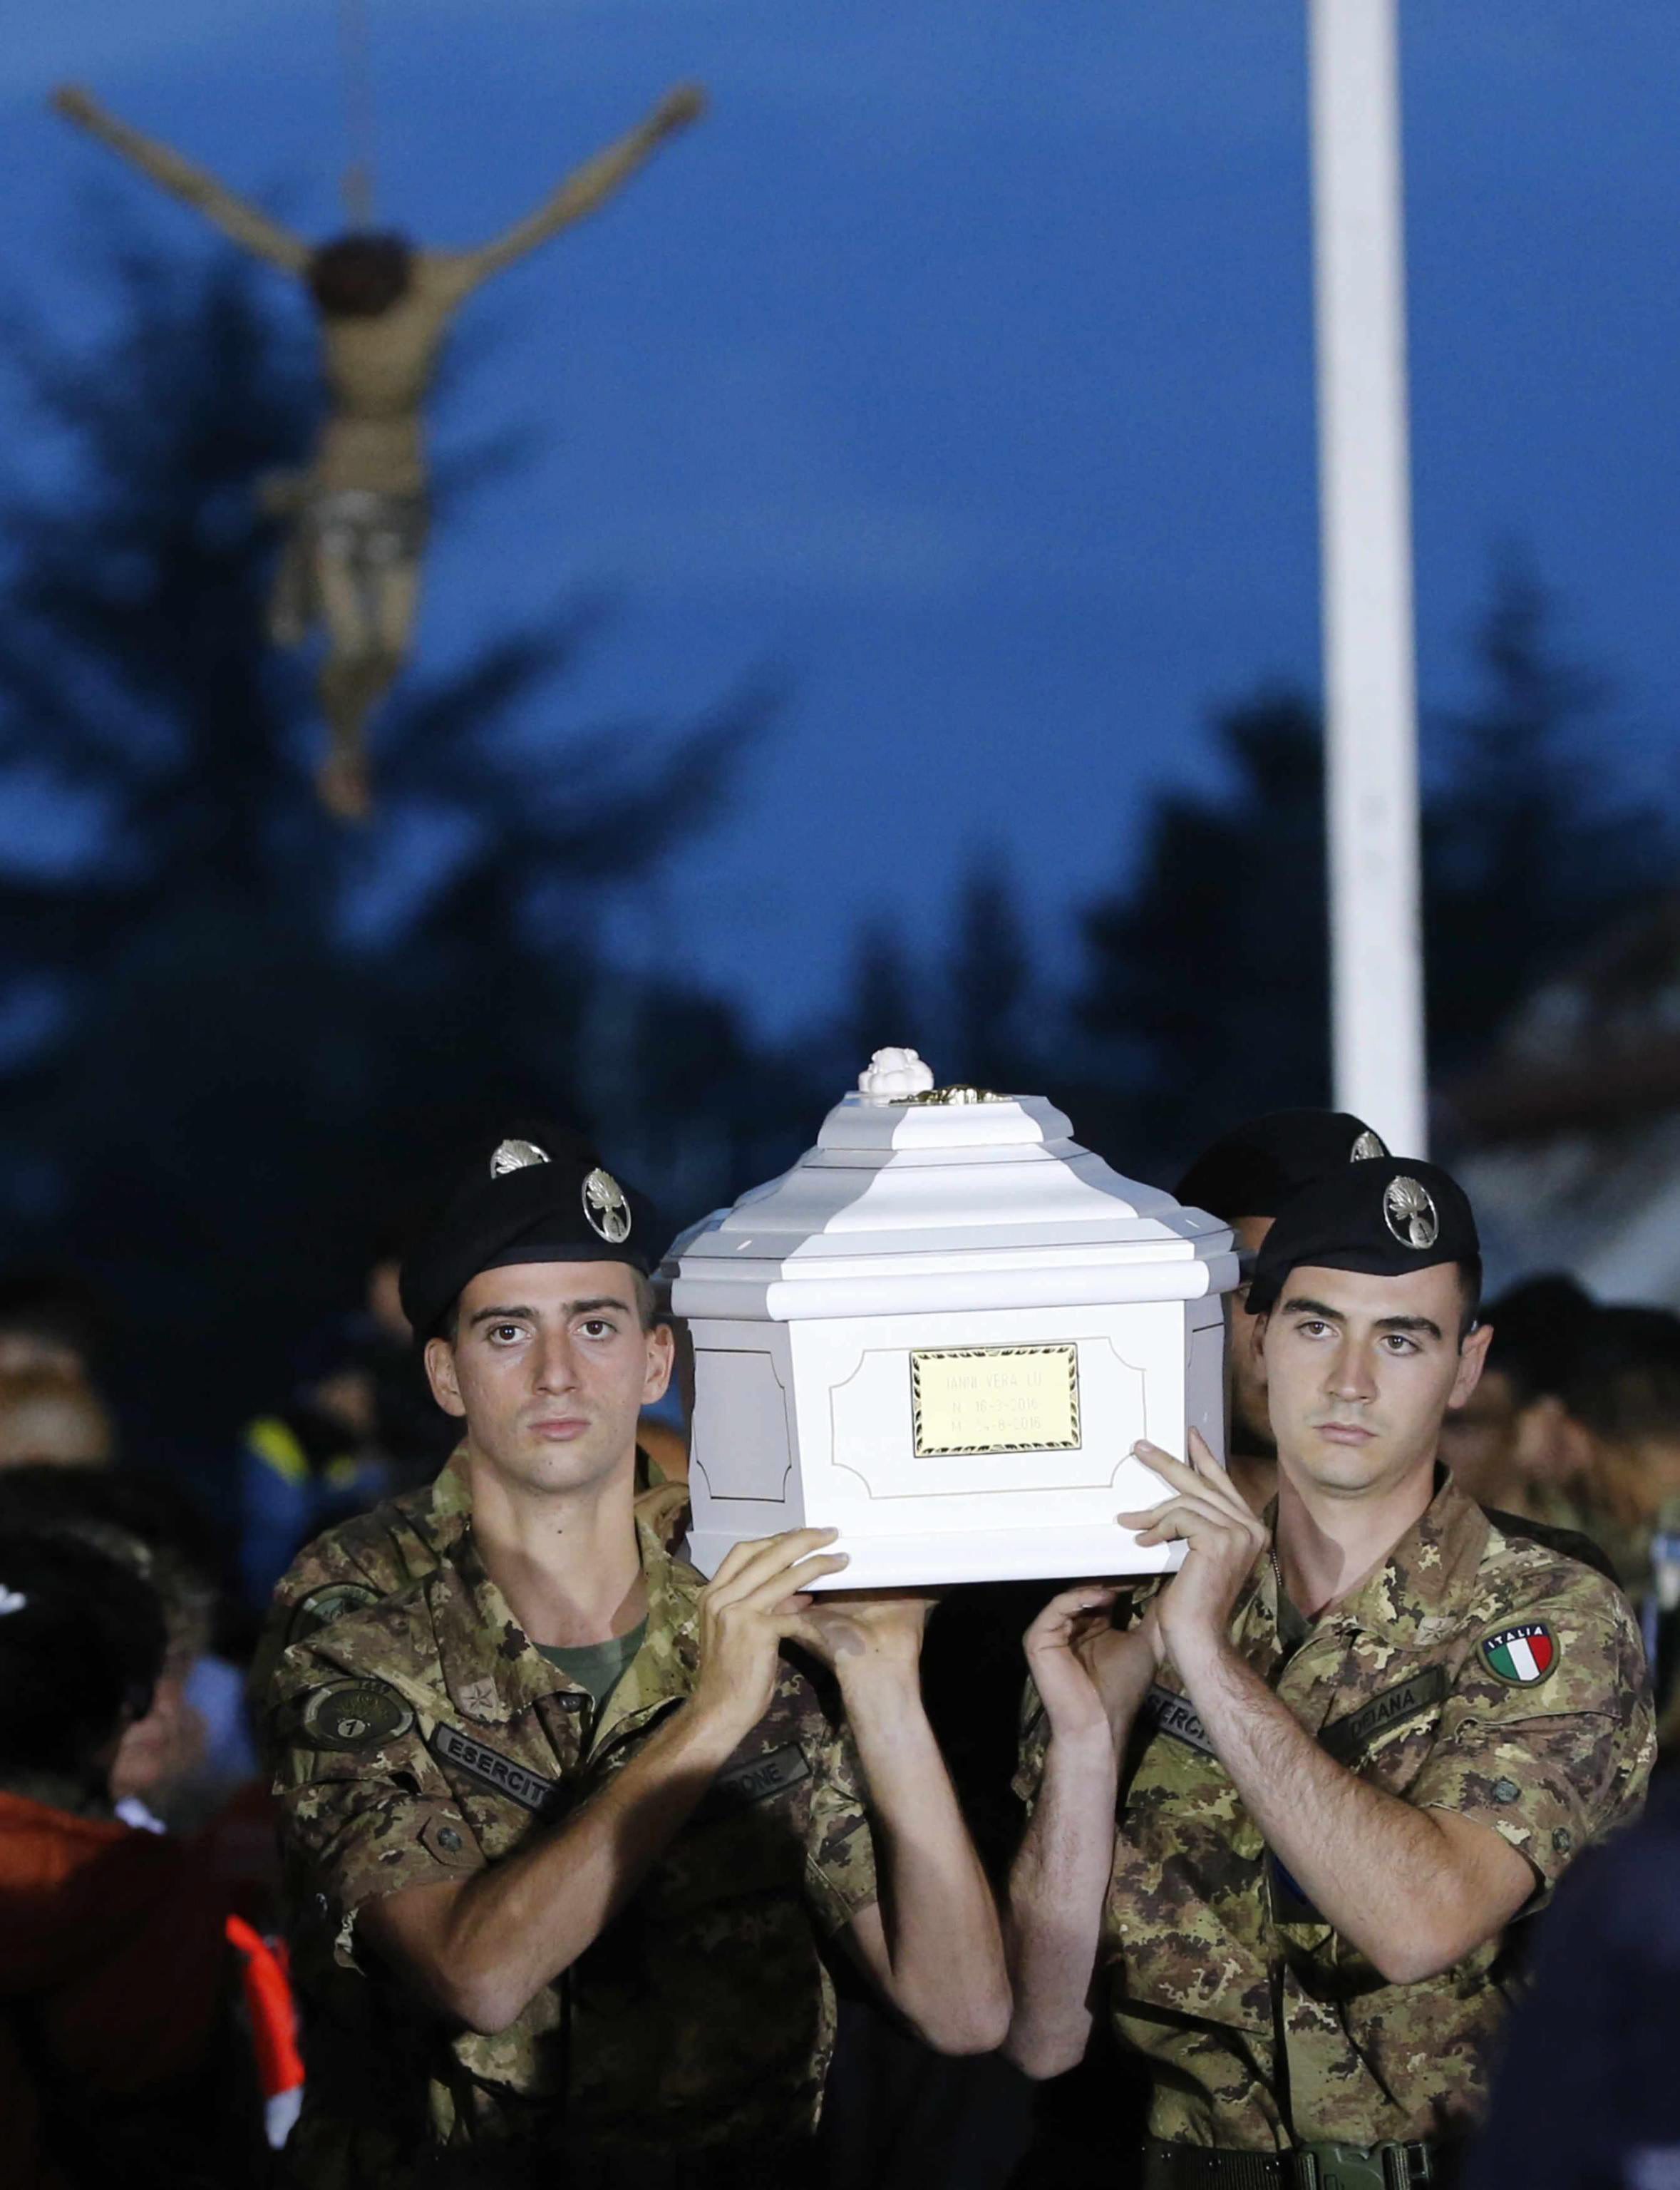 Amatrice despide a sus 231 muertos por el seísmo con un funeral de Estado